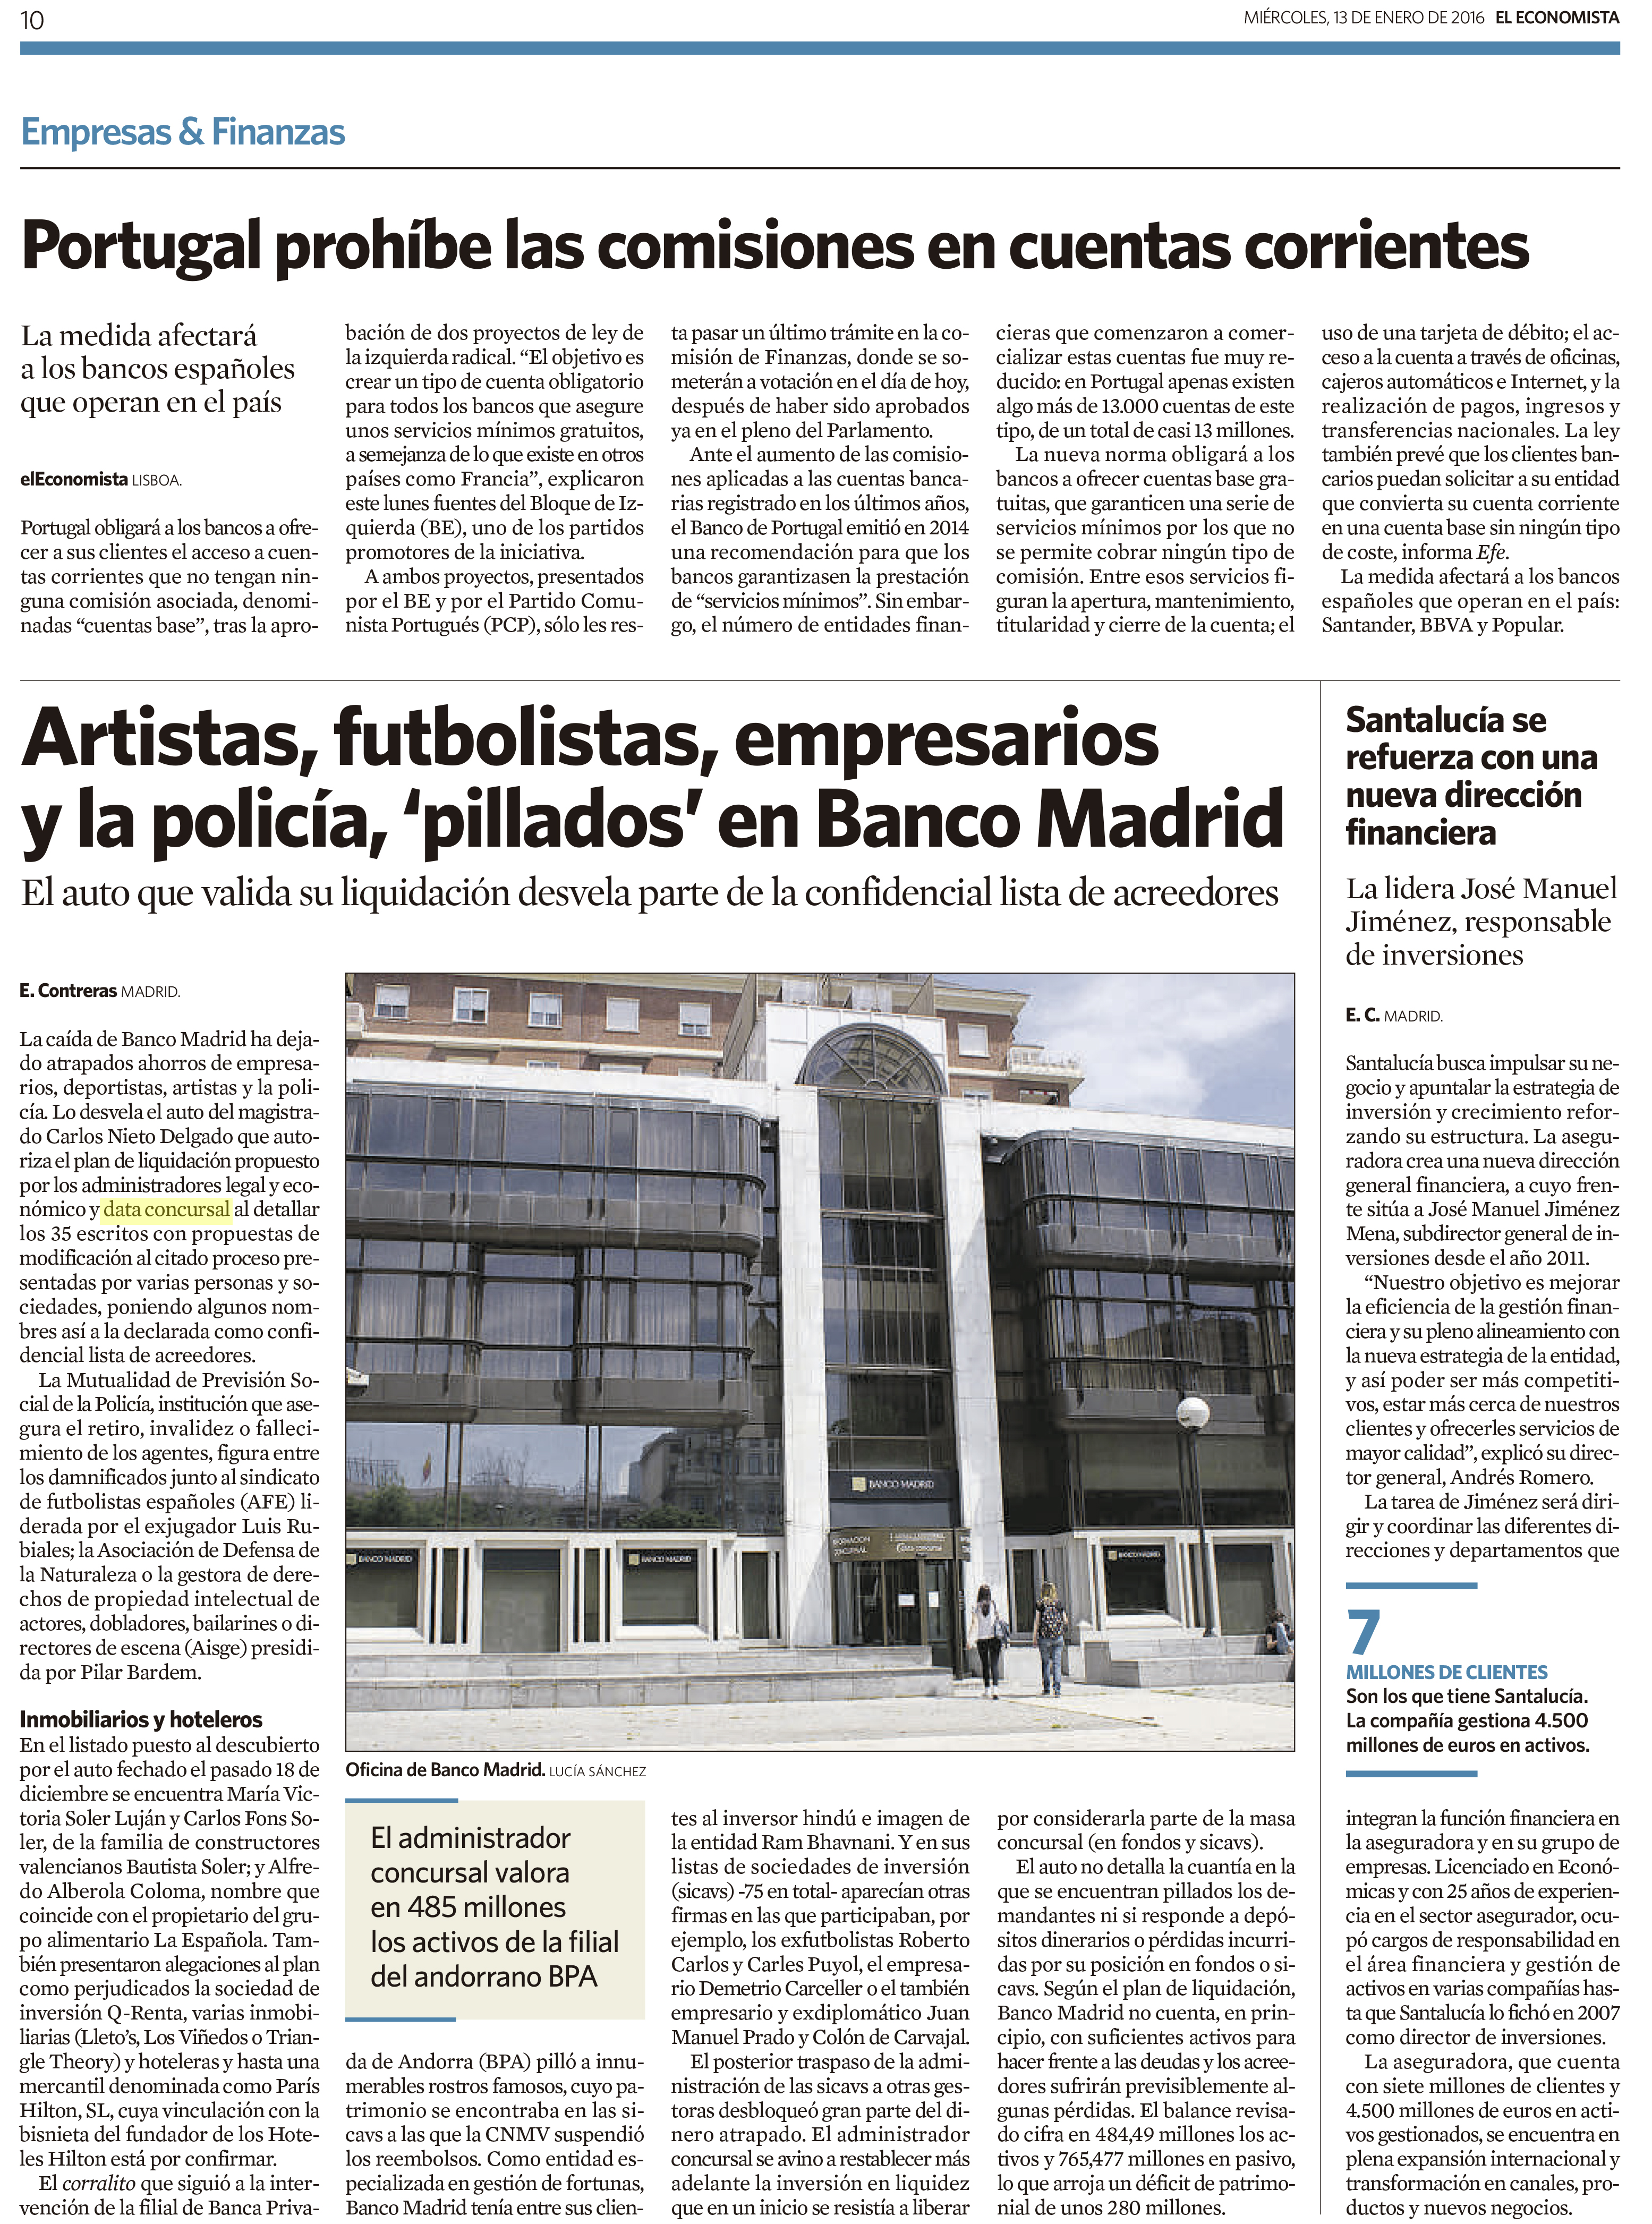 El Economista: Validación del plan de liquidación por el juez de Banco Madrid